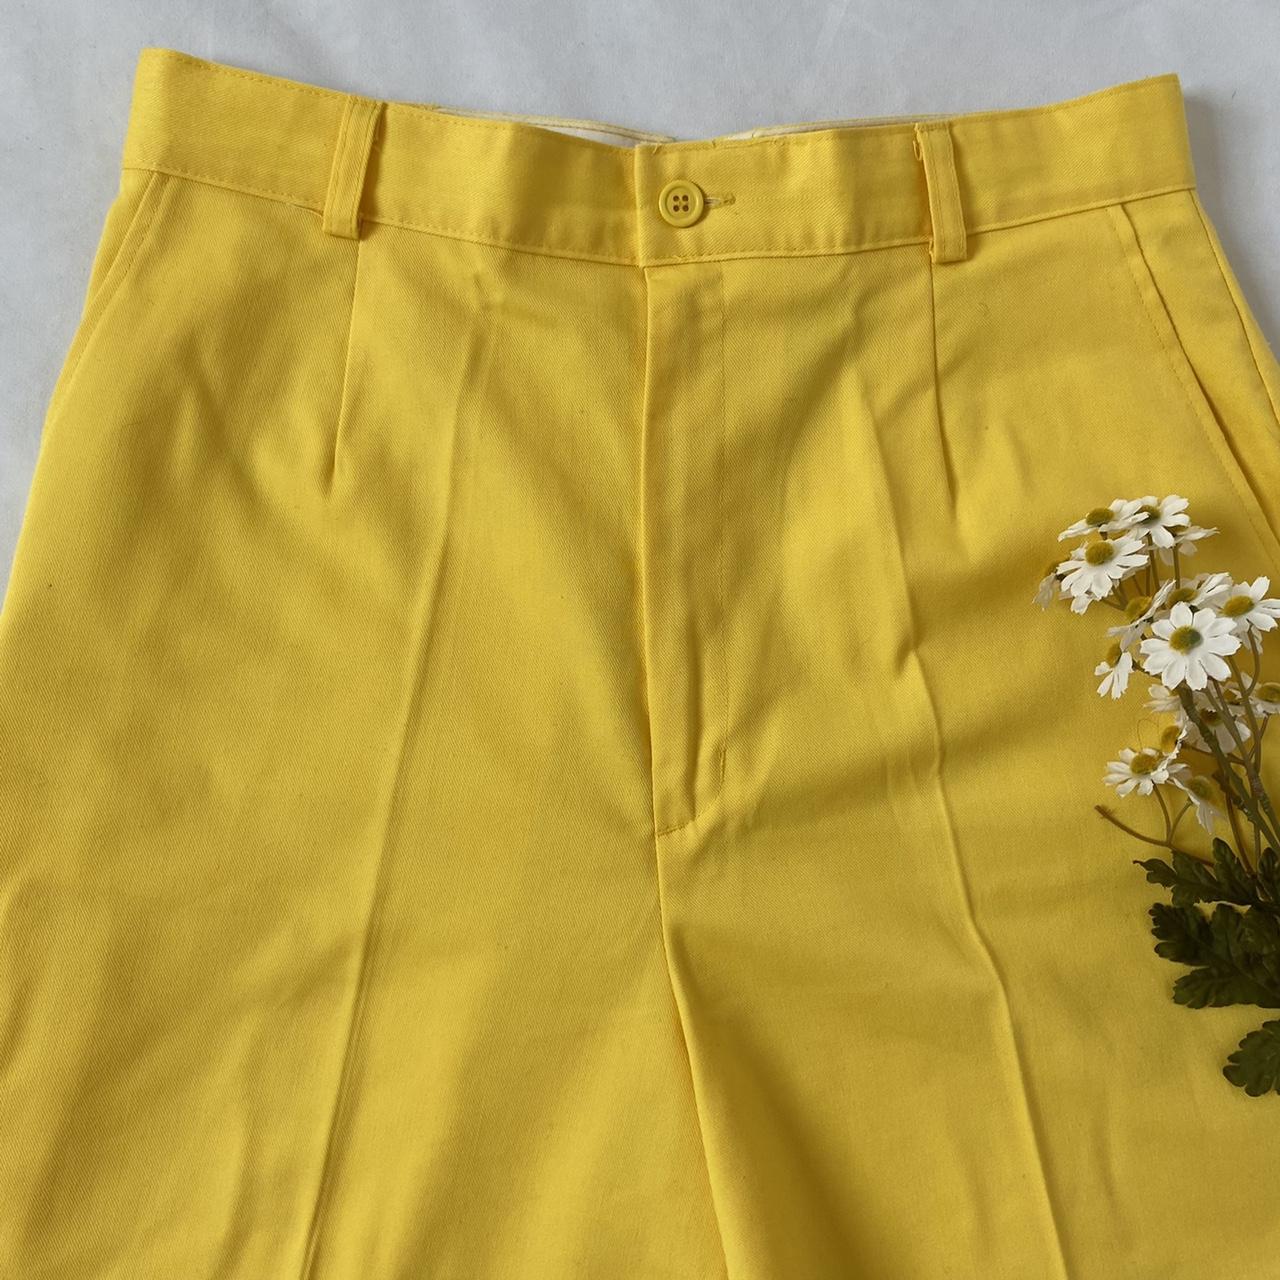 Sears Women's Yellow Shorts (3)